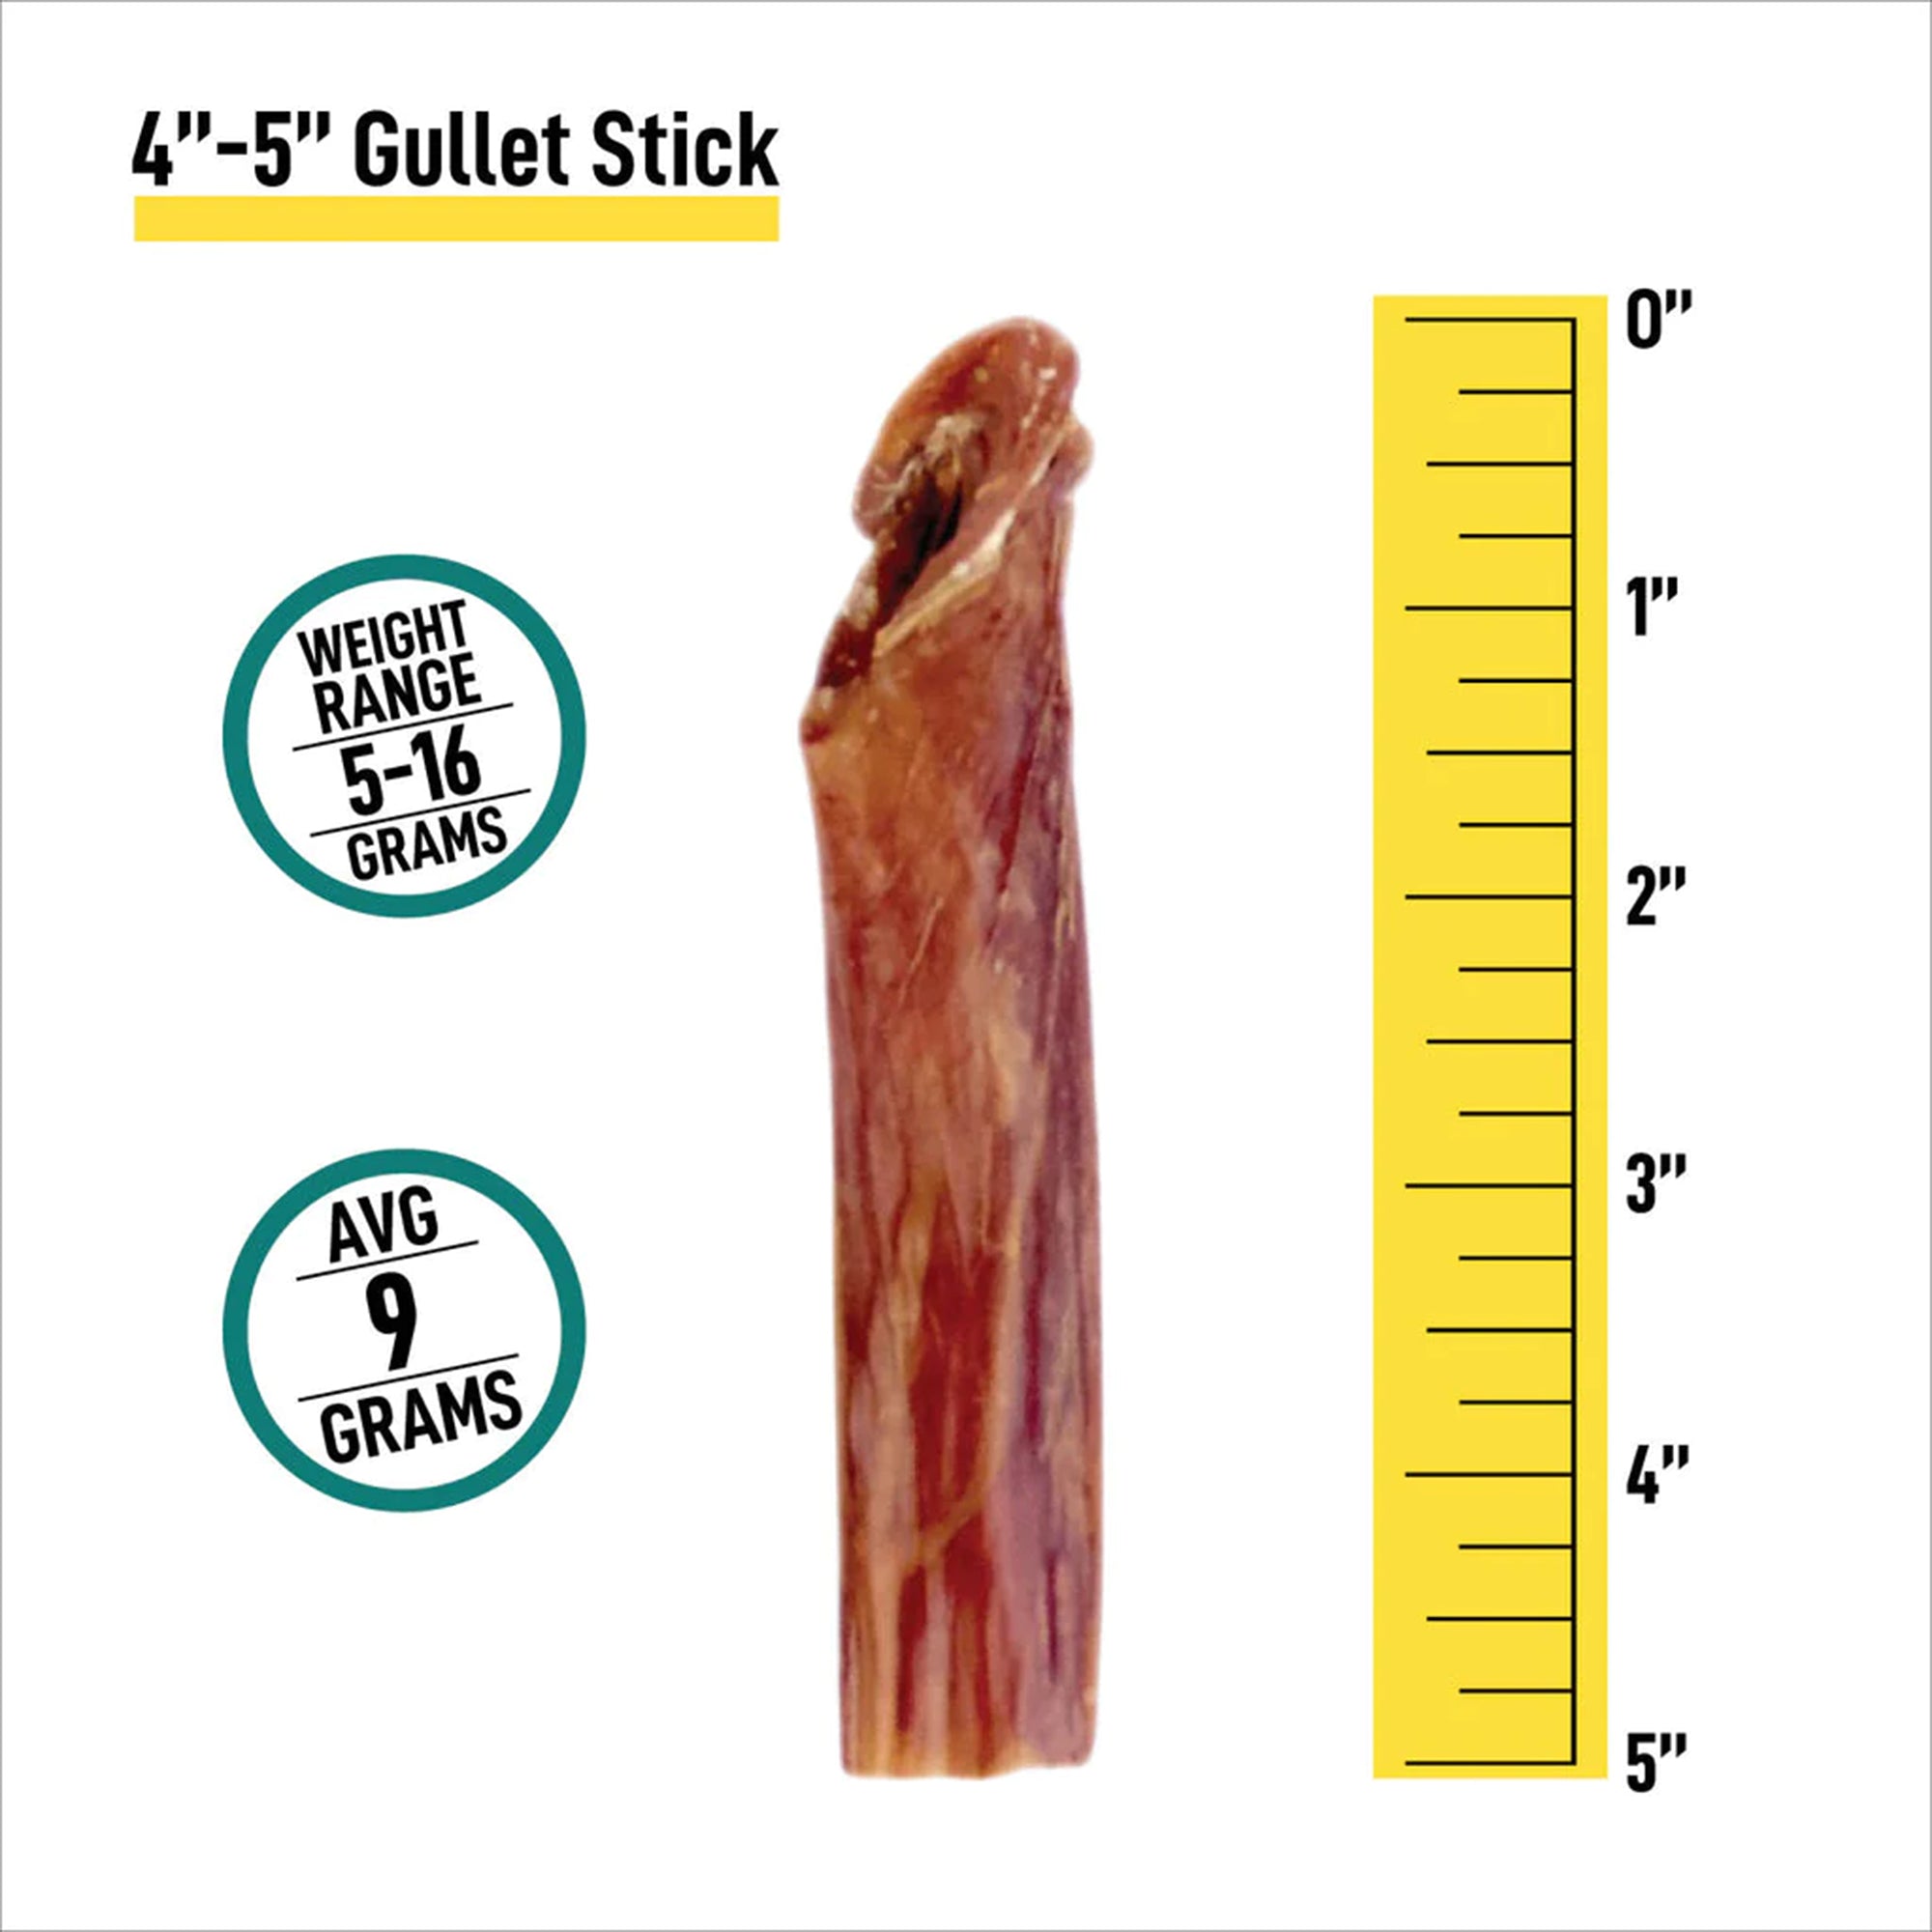 4-5” Gullet Sticks - 16oz Bag - 4-5” Gullet Sticks - 16oz Bag - K9warehouse.com